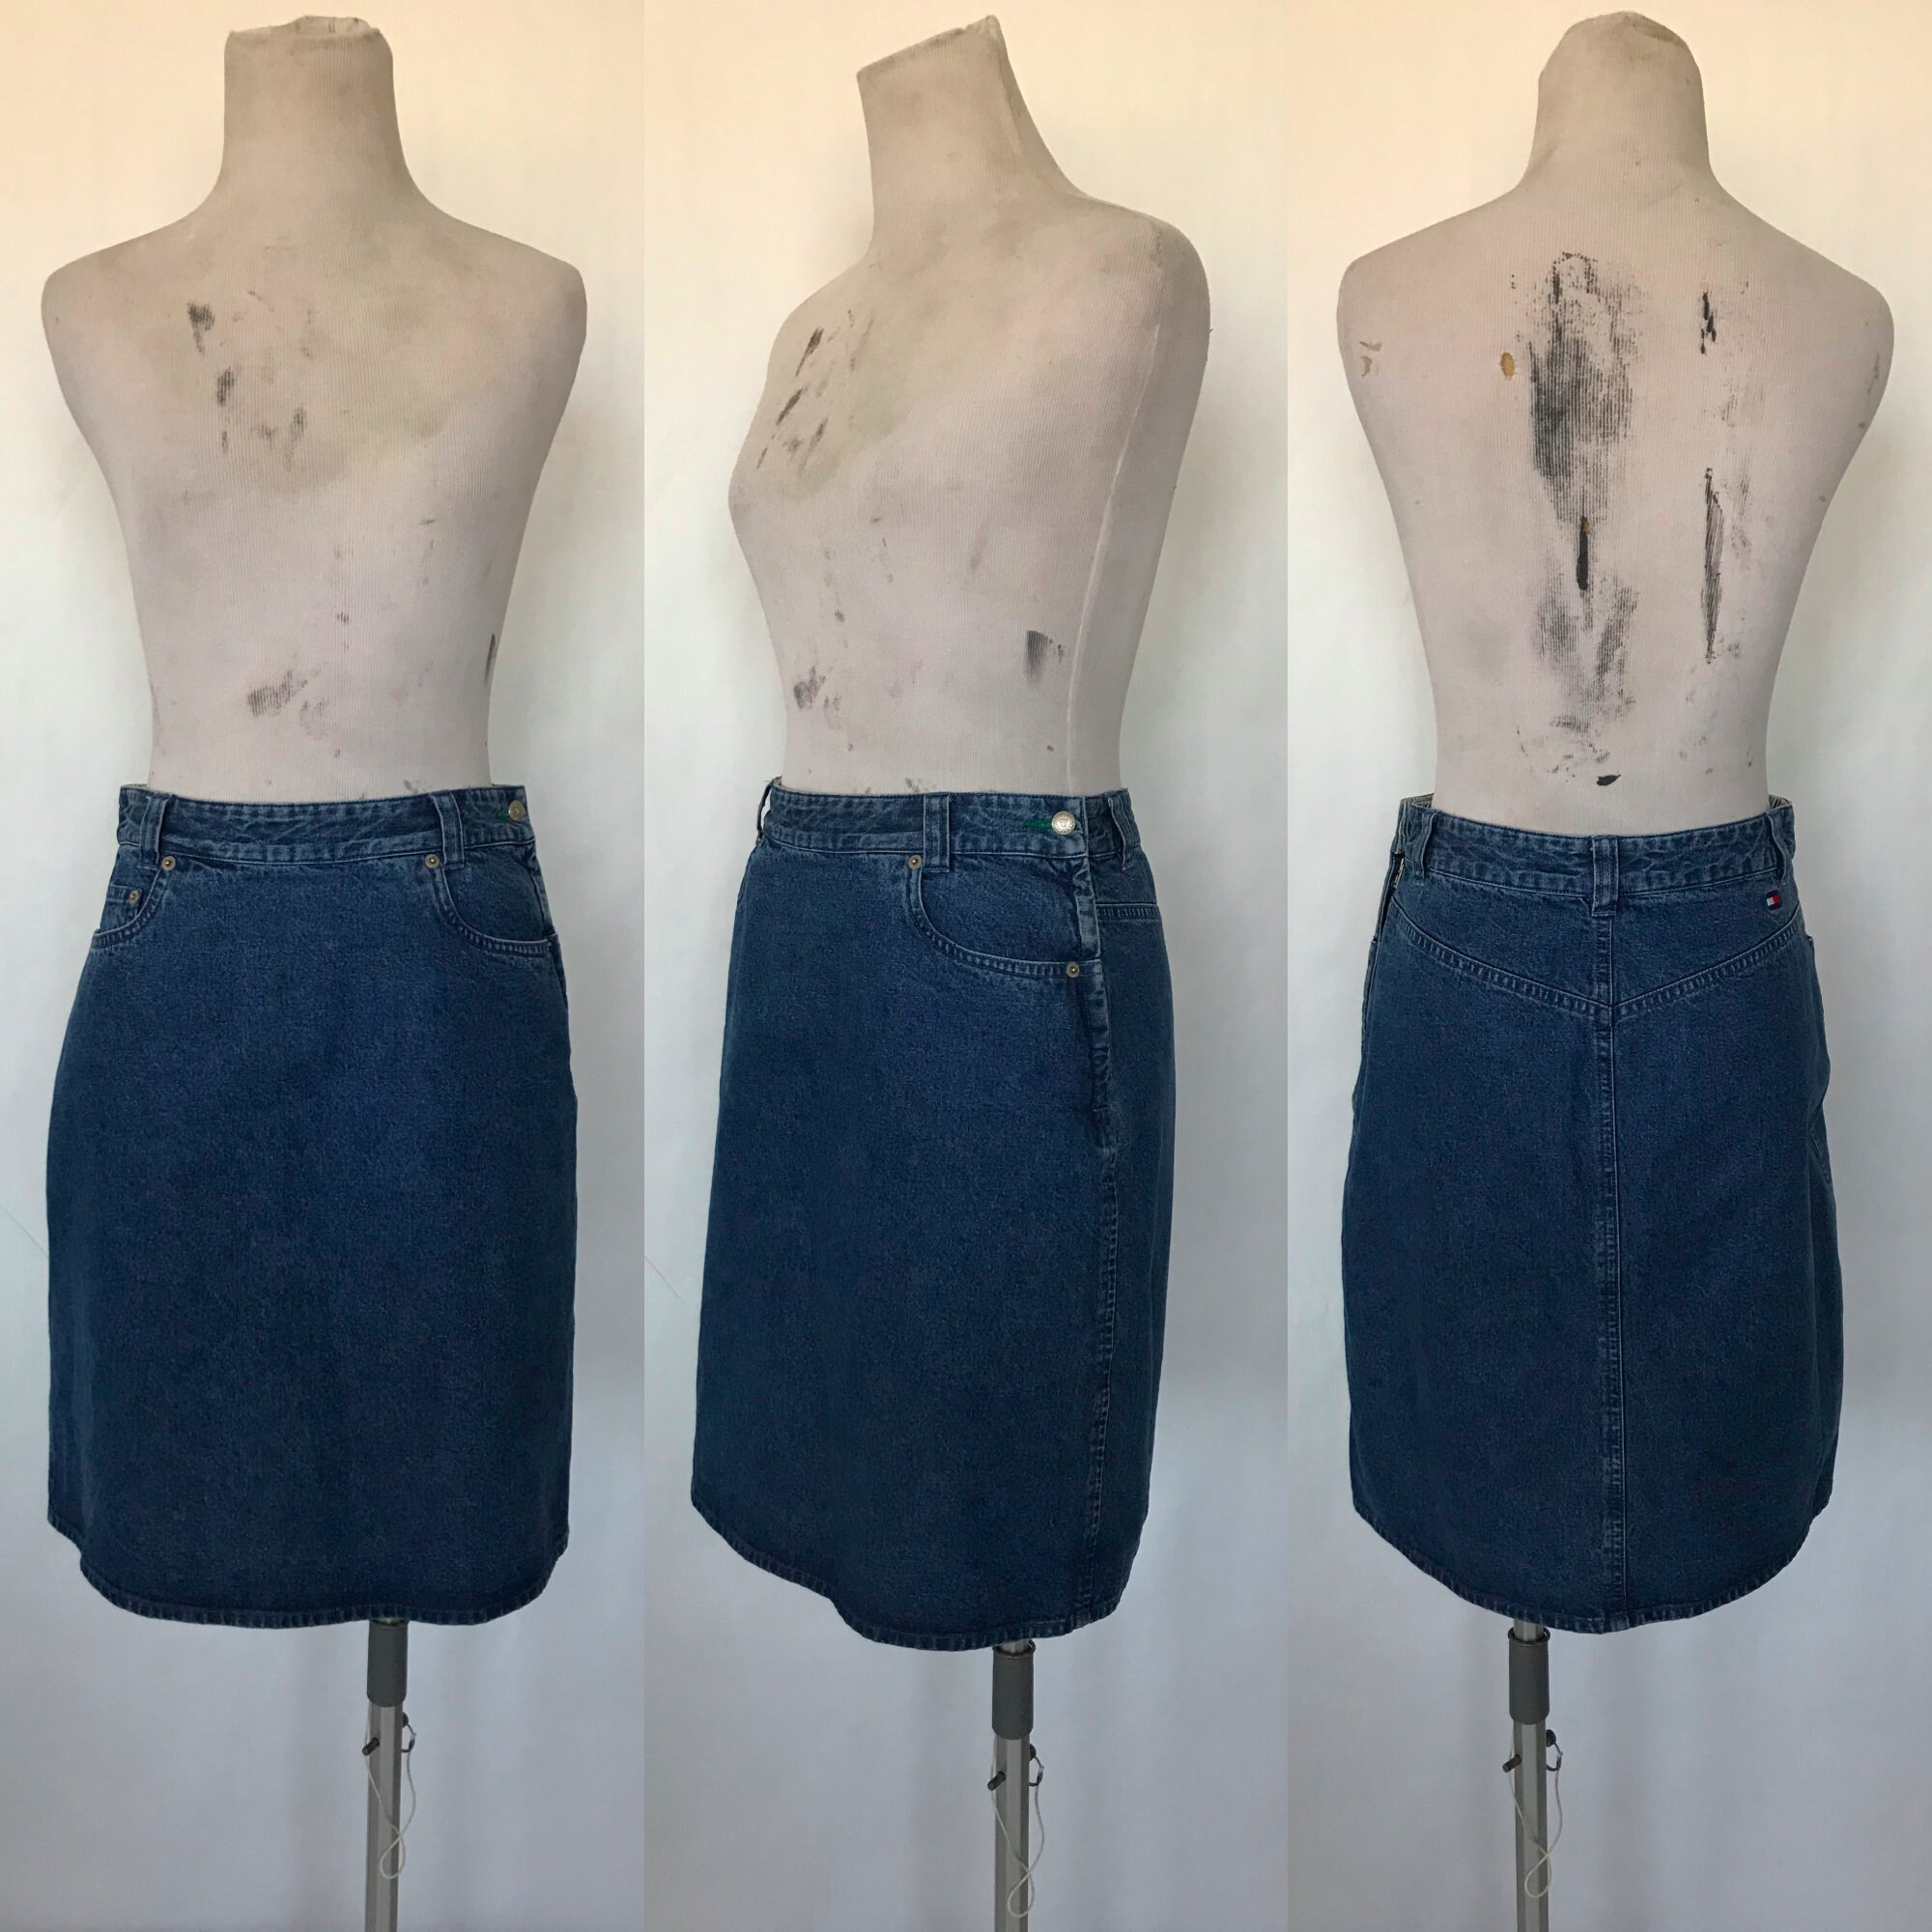 Retro Mini Skirt White with Blue Trim 1990's Wrapover 1950/60's style Medium 